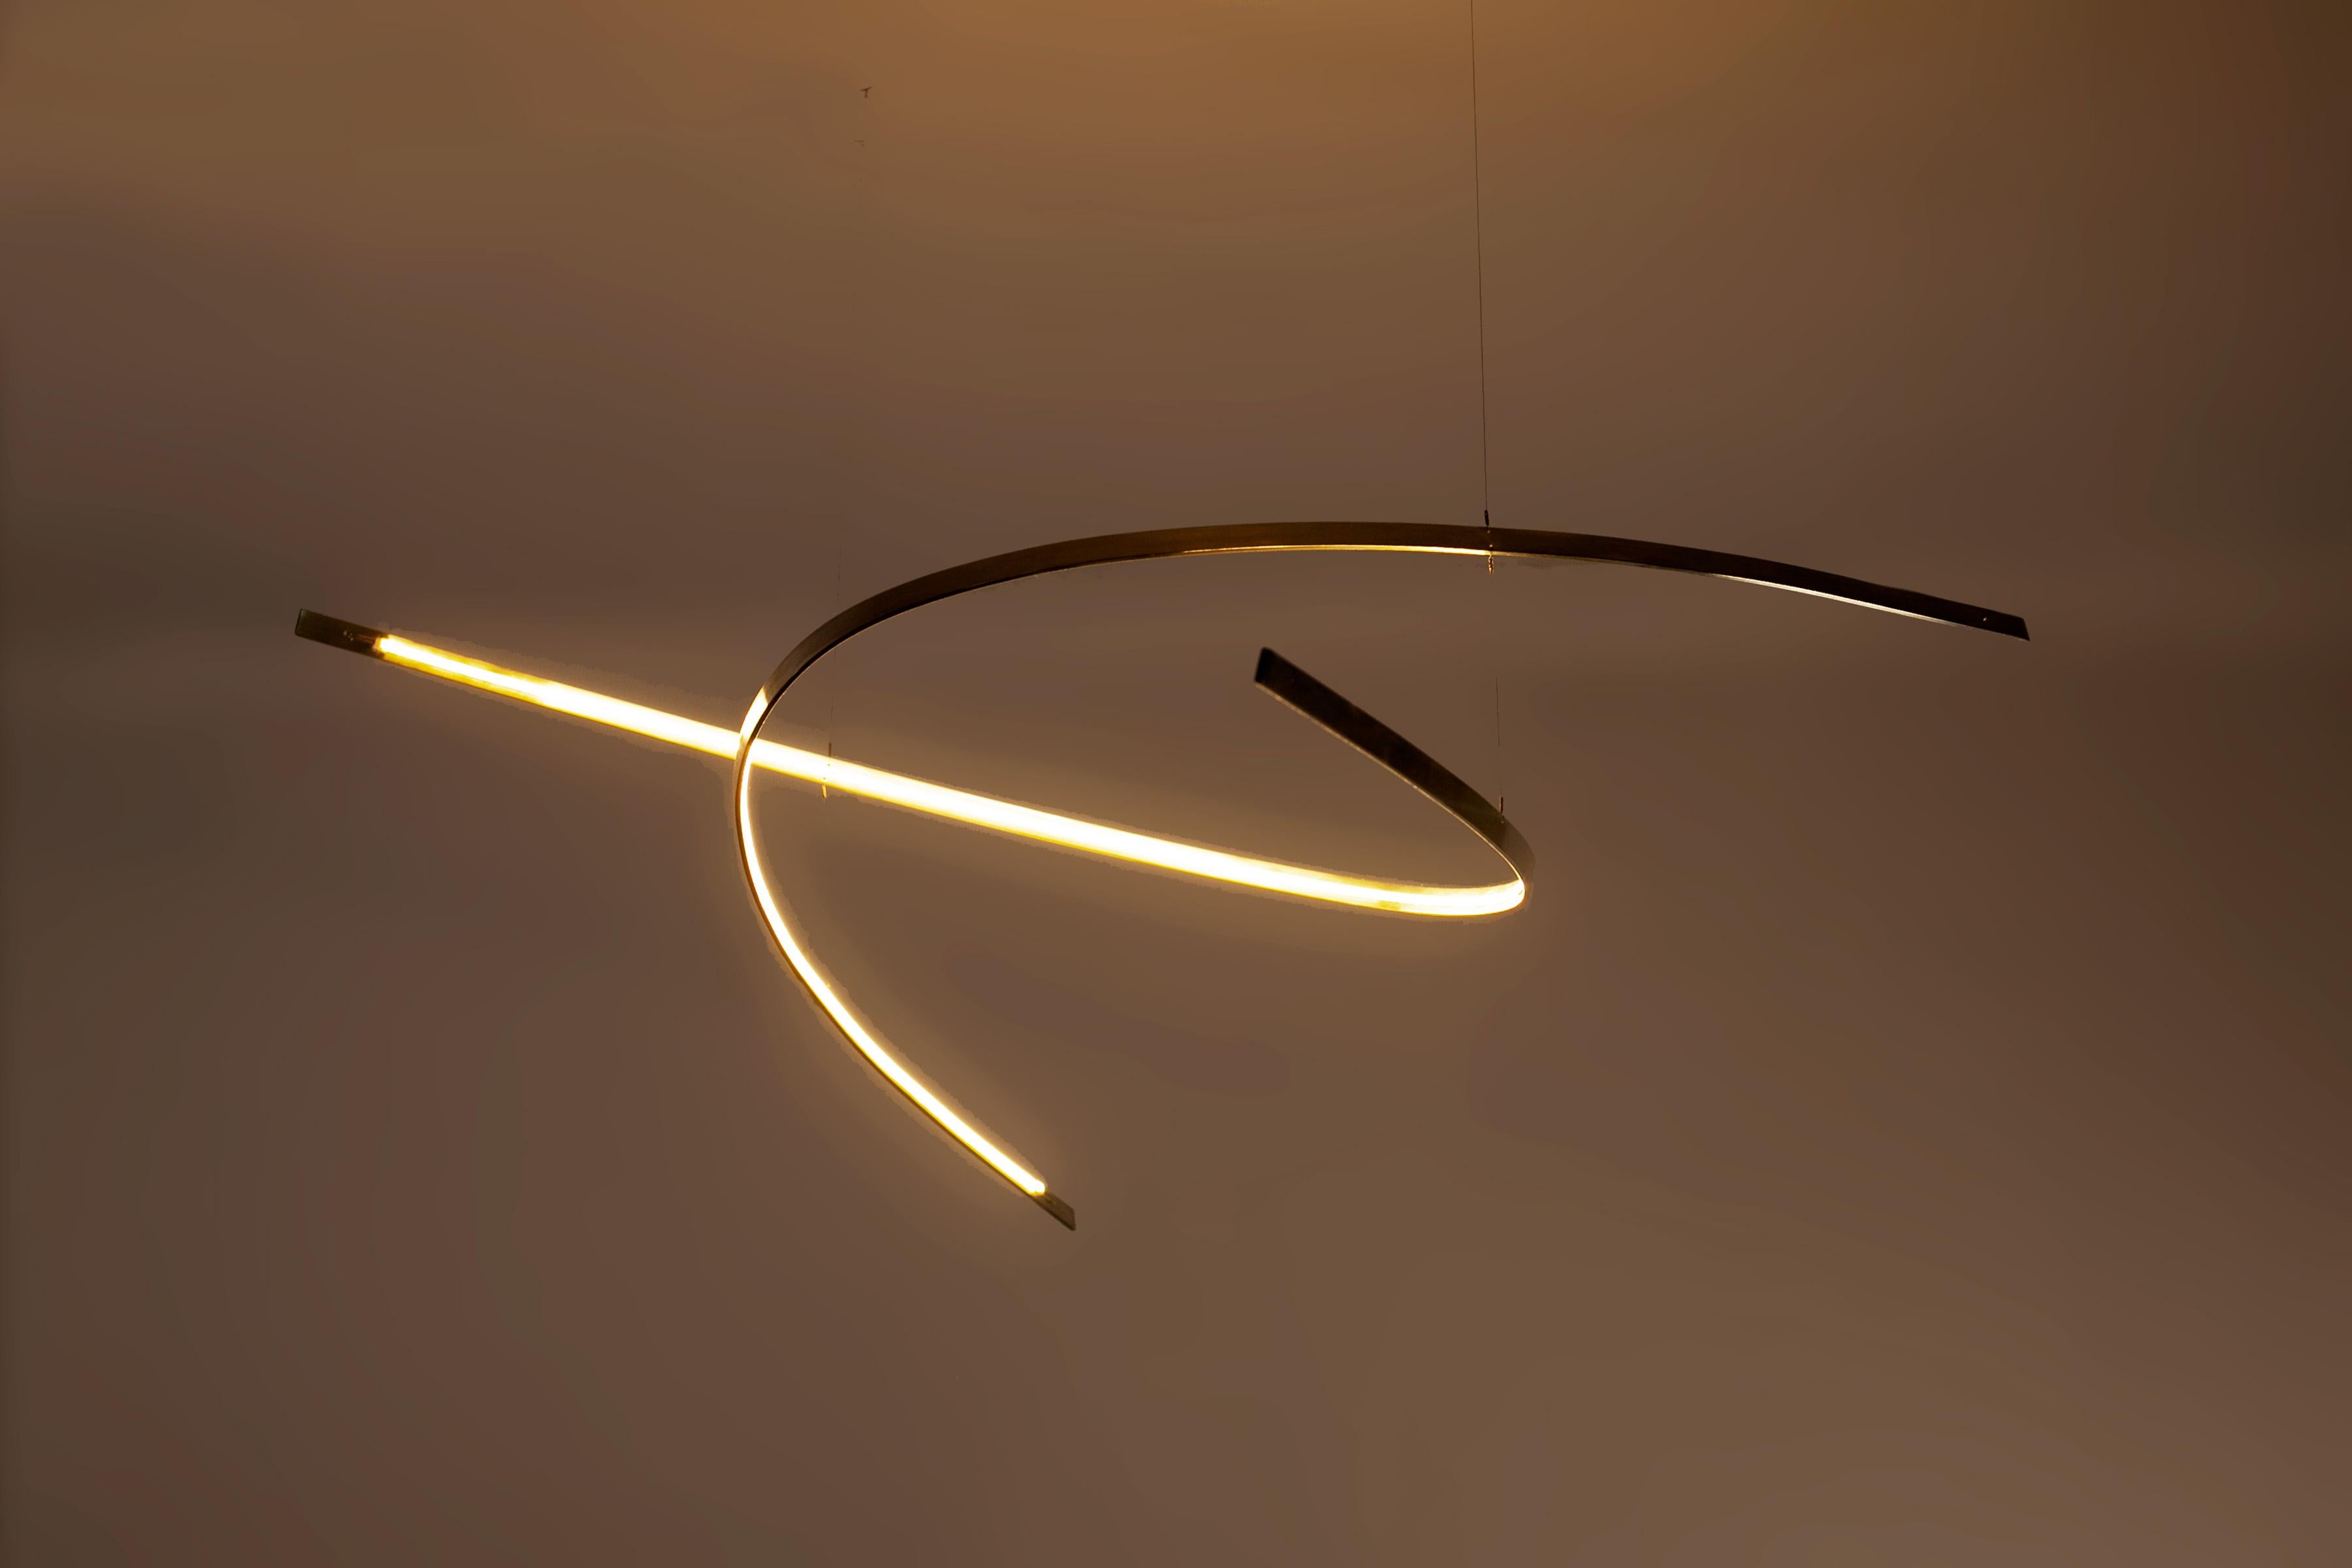 Arx est un lustre-pendentif d'inspiration moderniste et de taille modeste.

Comme pour toutes les pièces From the Sky, la bande LED utilisée a un IRC (indice de rendu des couleurs) de 92+, ce qui signifie qu'elle émet une lumière riche et apaisante.